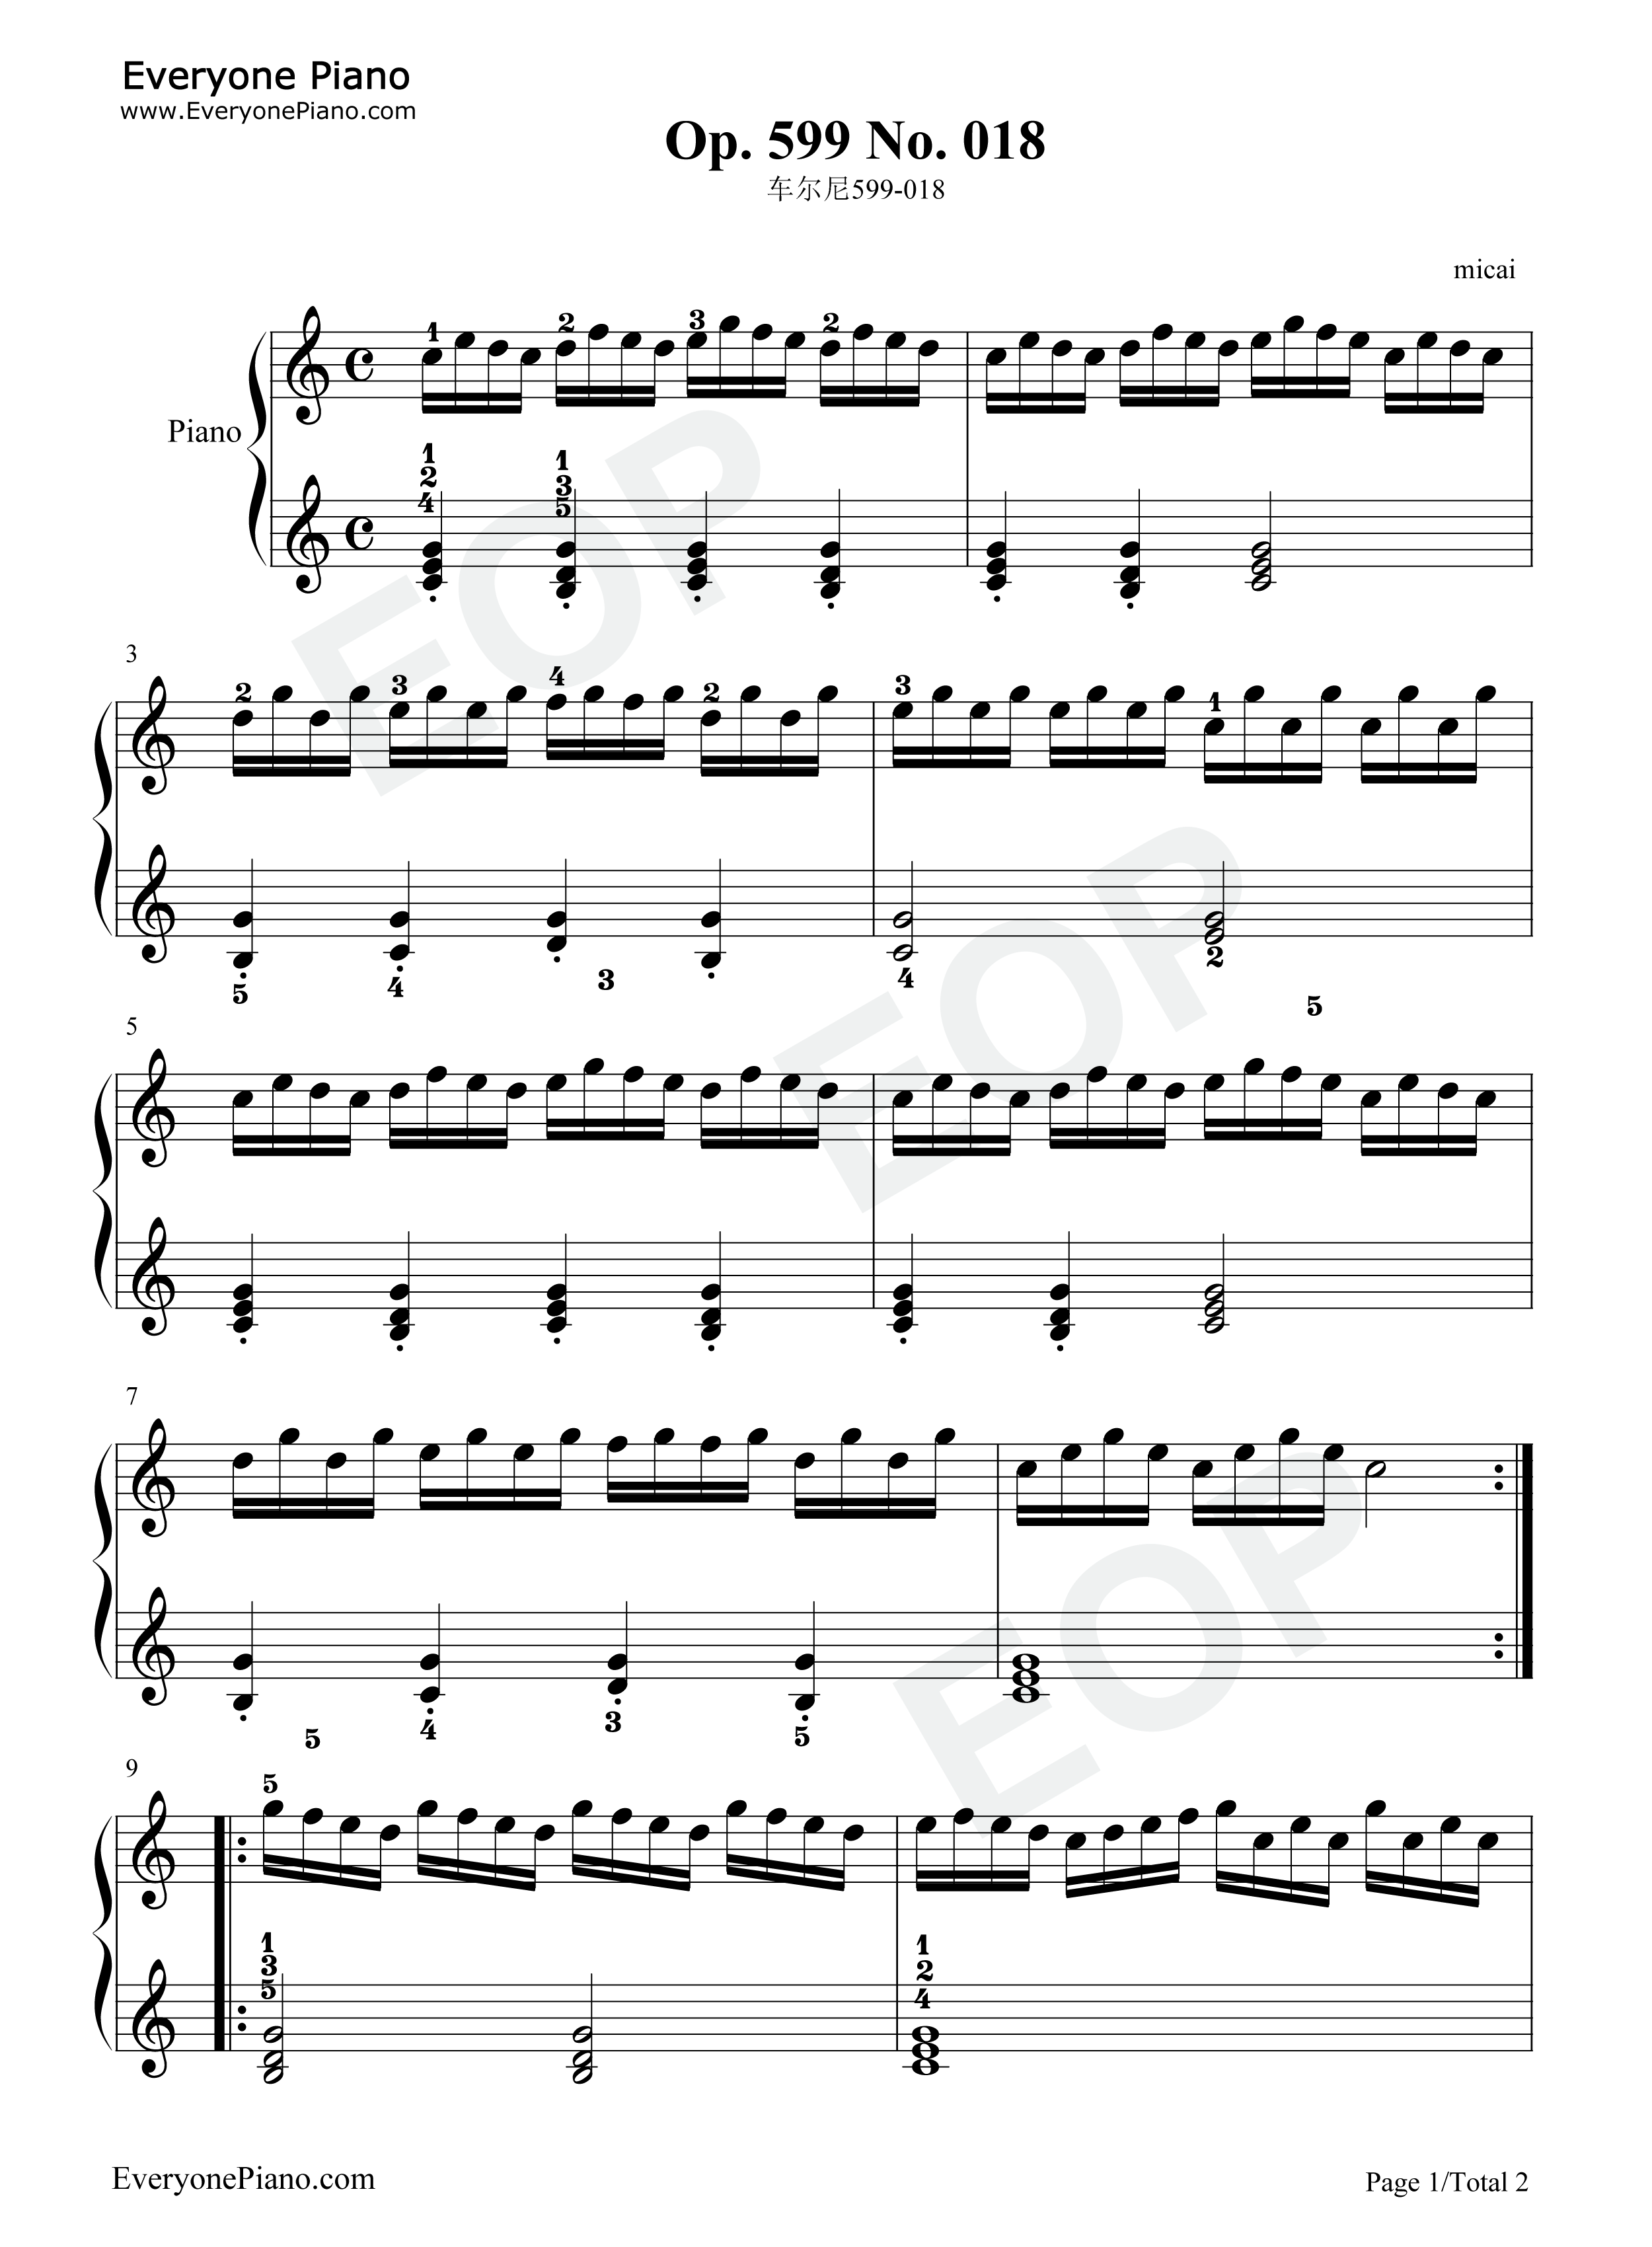 车尔尼599第25条钢琴谱图片